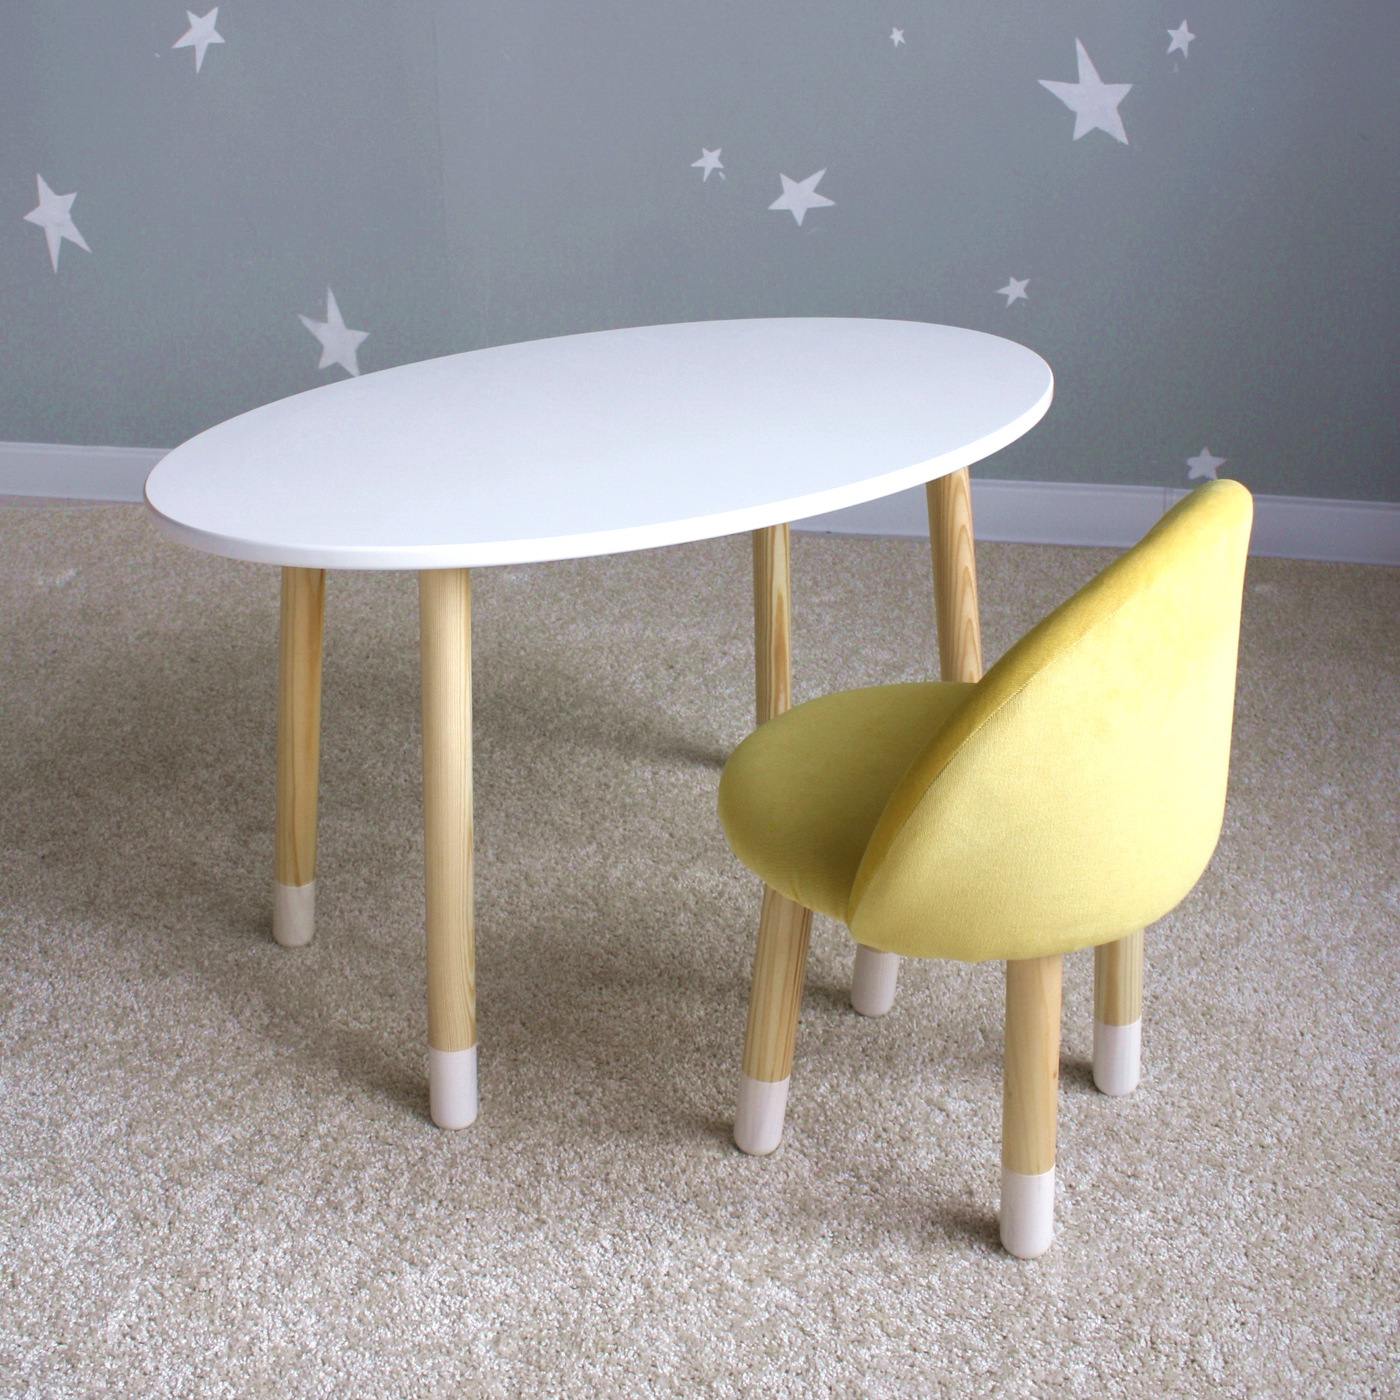 Комплект детской мебели DIMDOM kids Овал белый + Мягкий стульчик Желтый